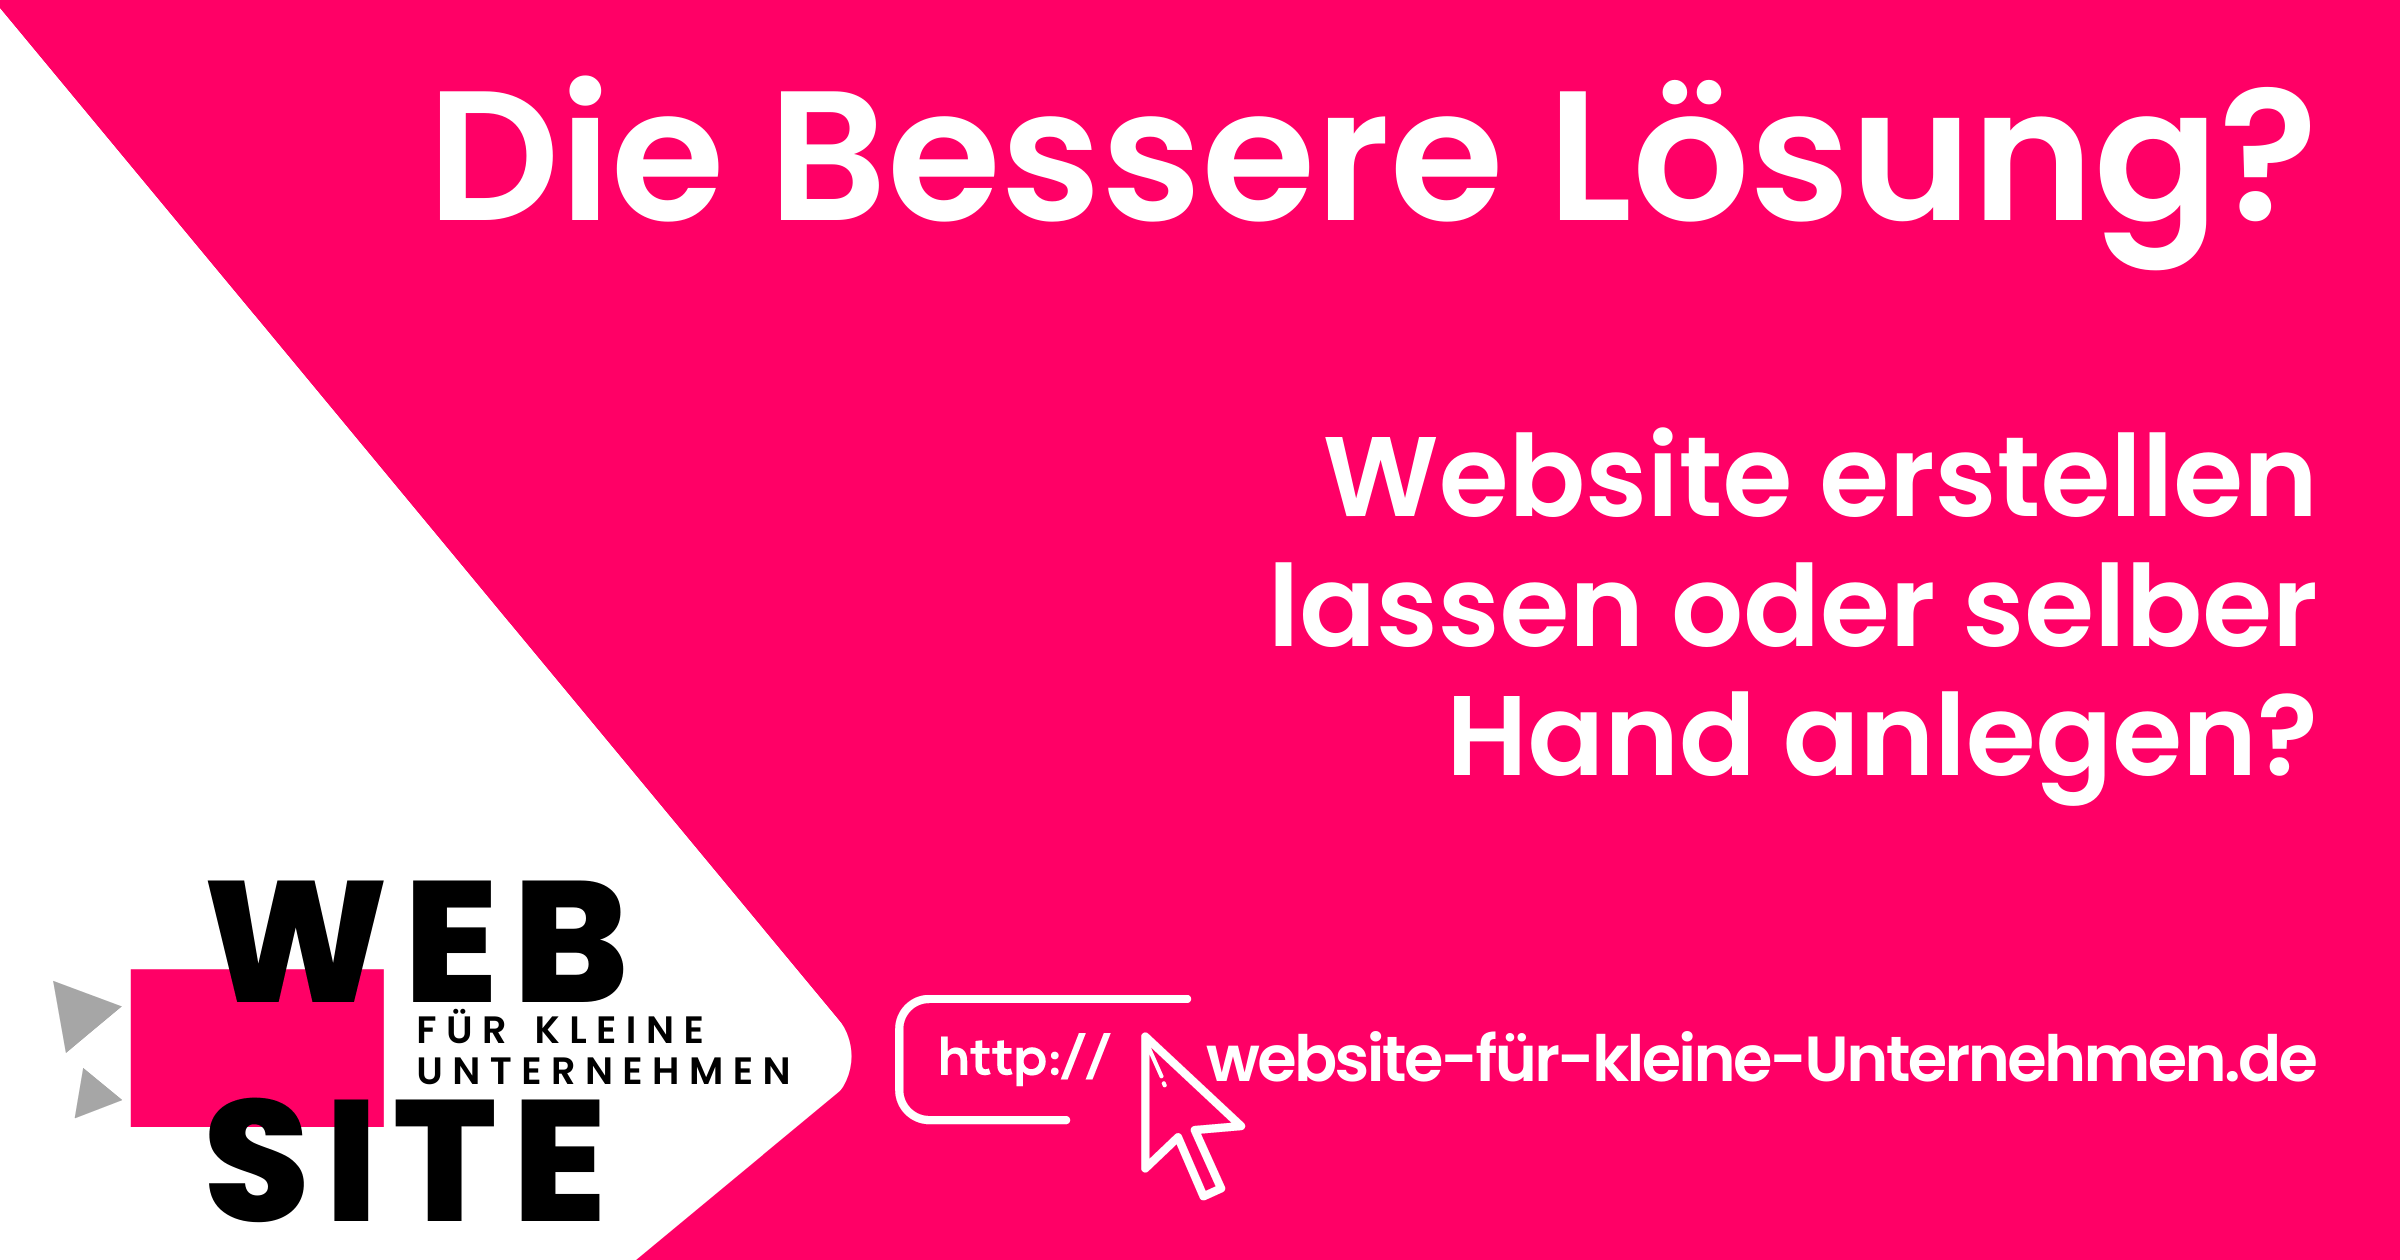 website-für-kleine-unternehmen - Website Erstellen lassen Preise - Die Bessere Lösung